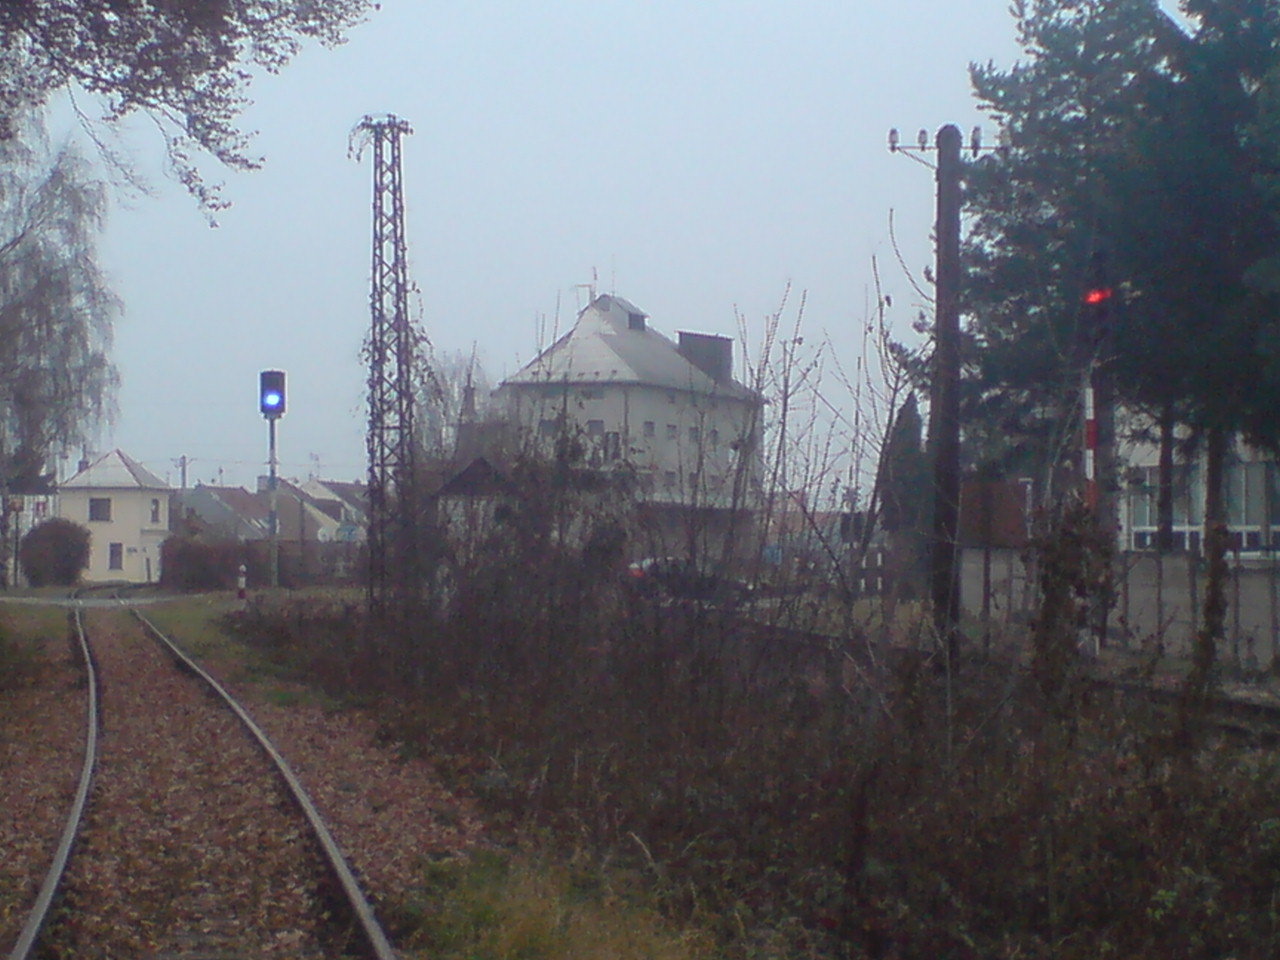 vlevo vlecka vpravo trat Stare mesto - Bylnice